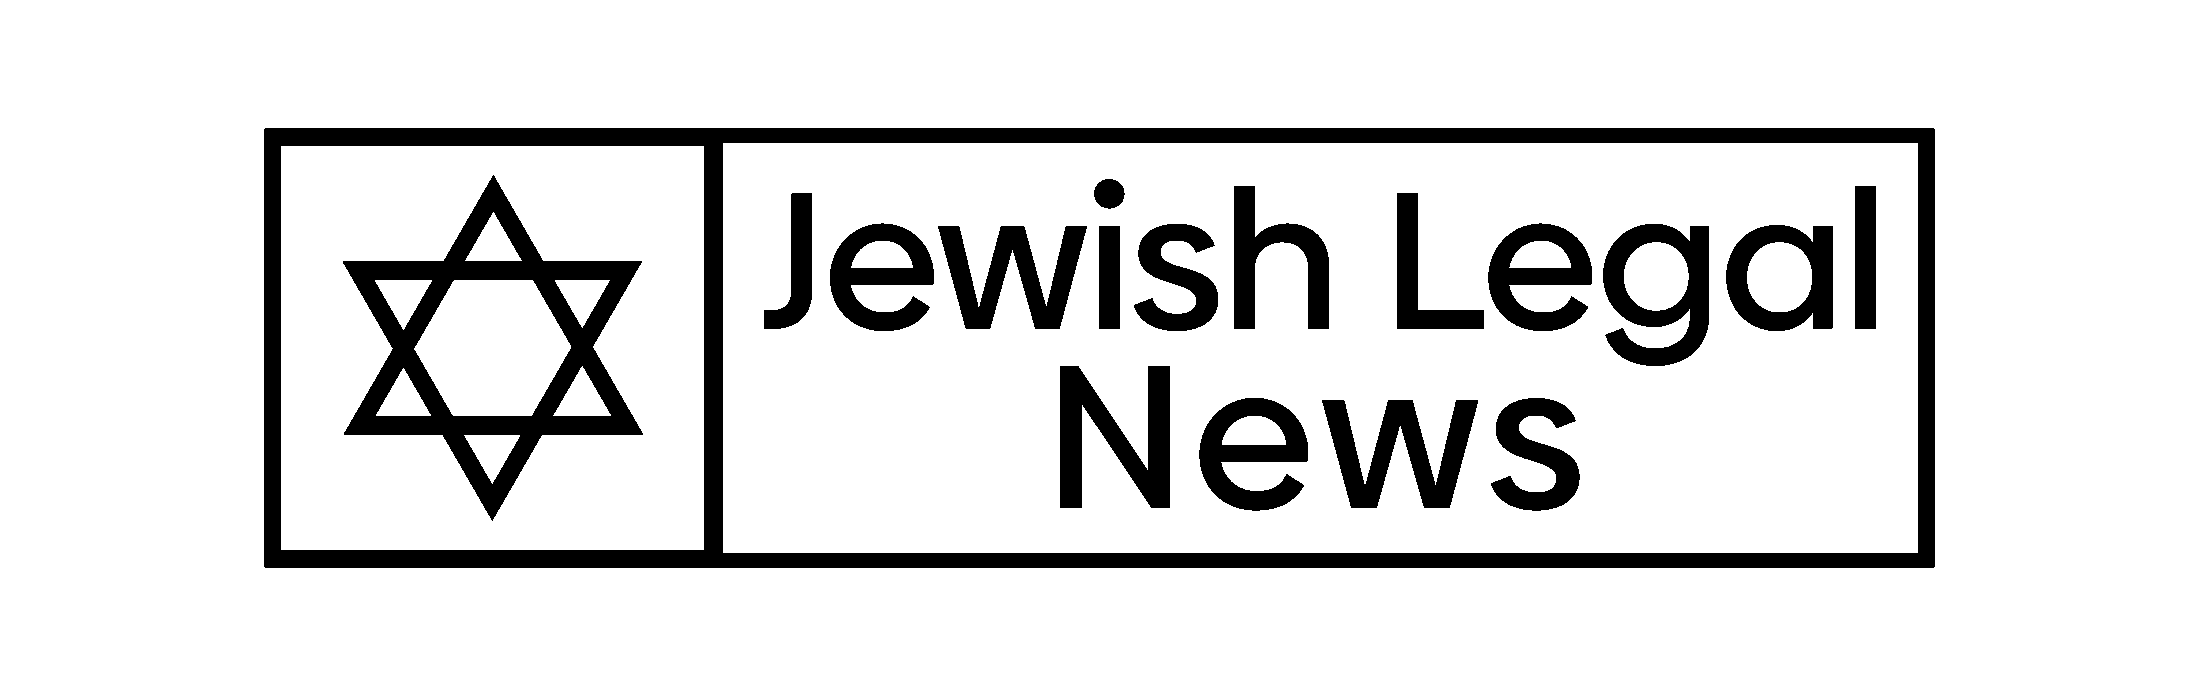 The Jewish Legal News